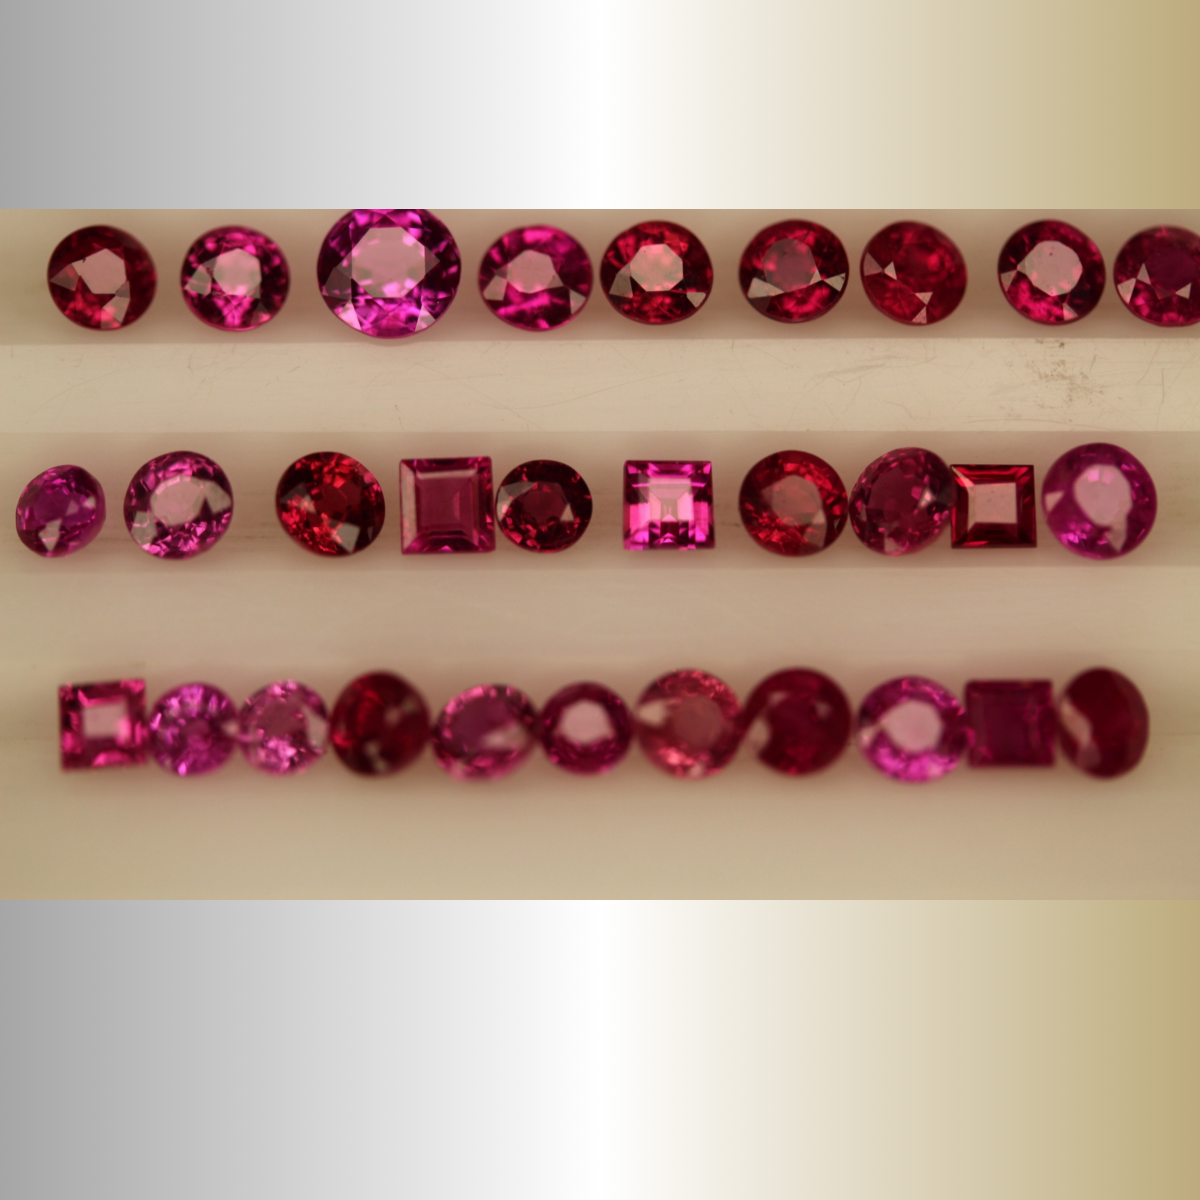 Afghan ruby gemstone price